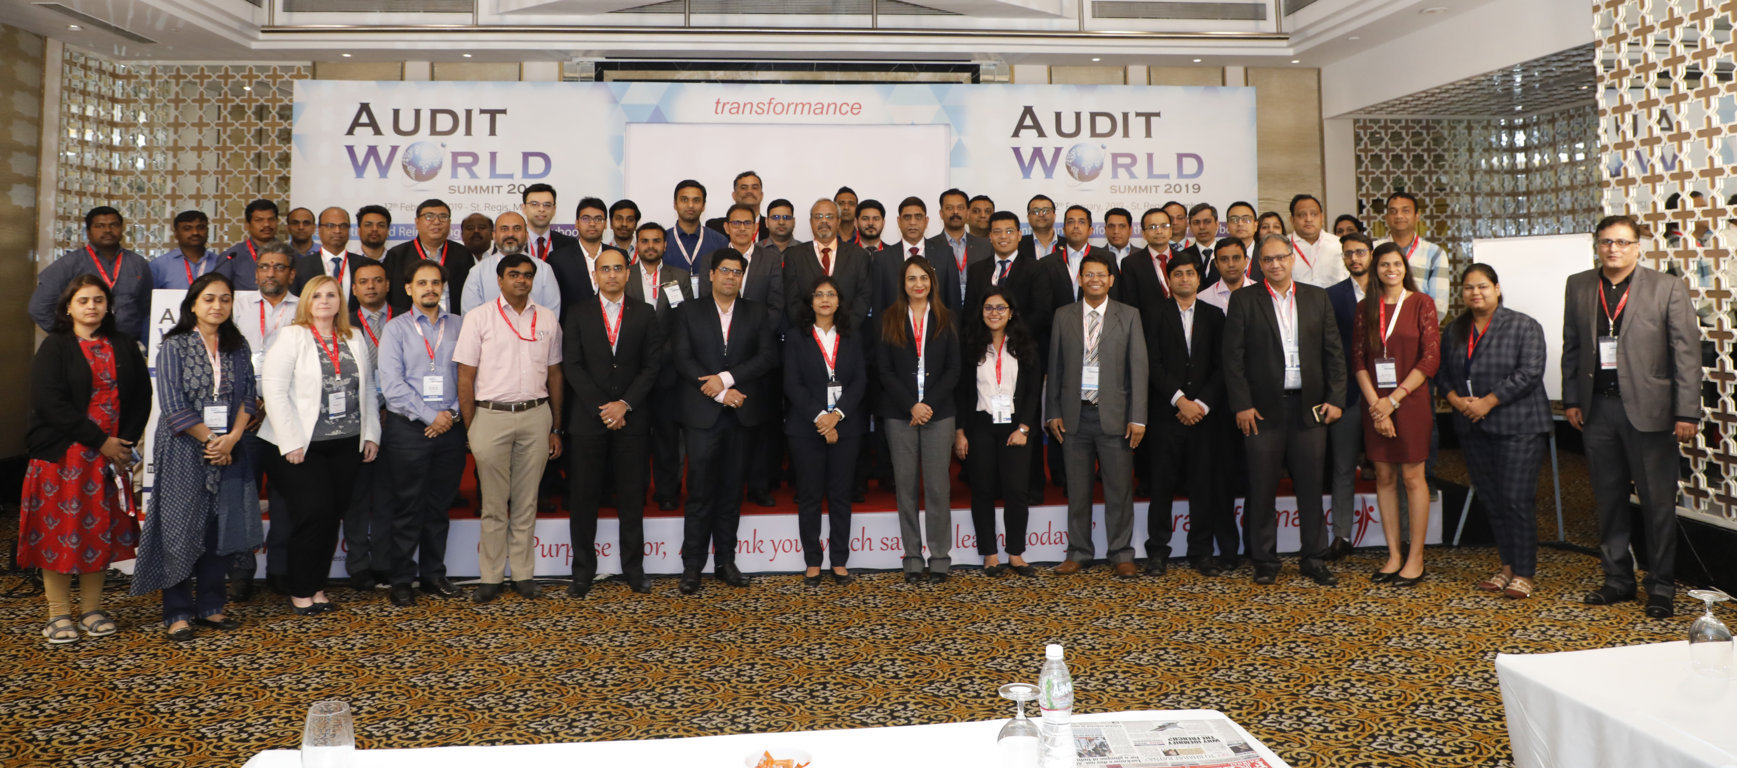 Audit World Summit 2019